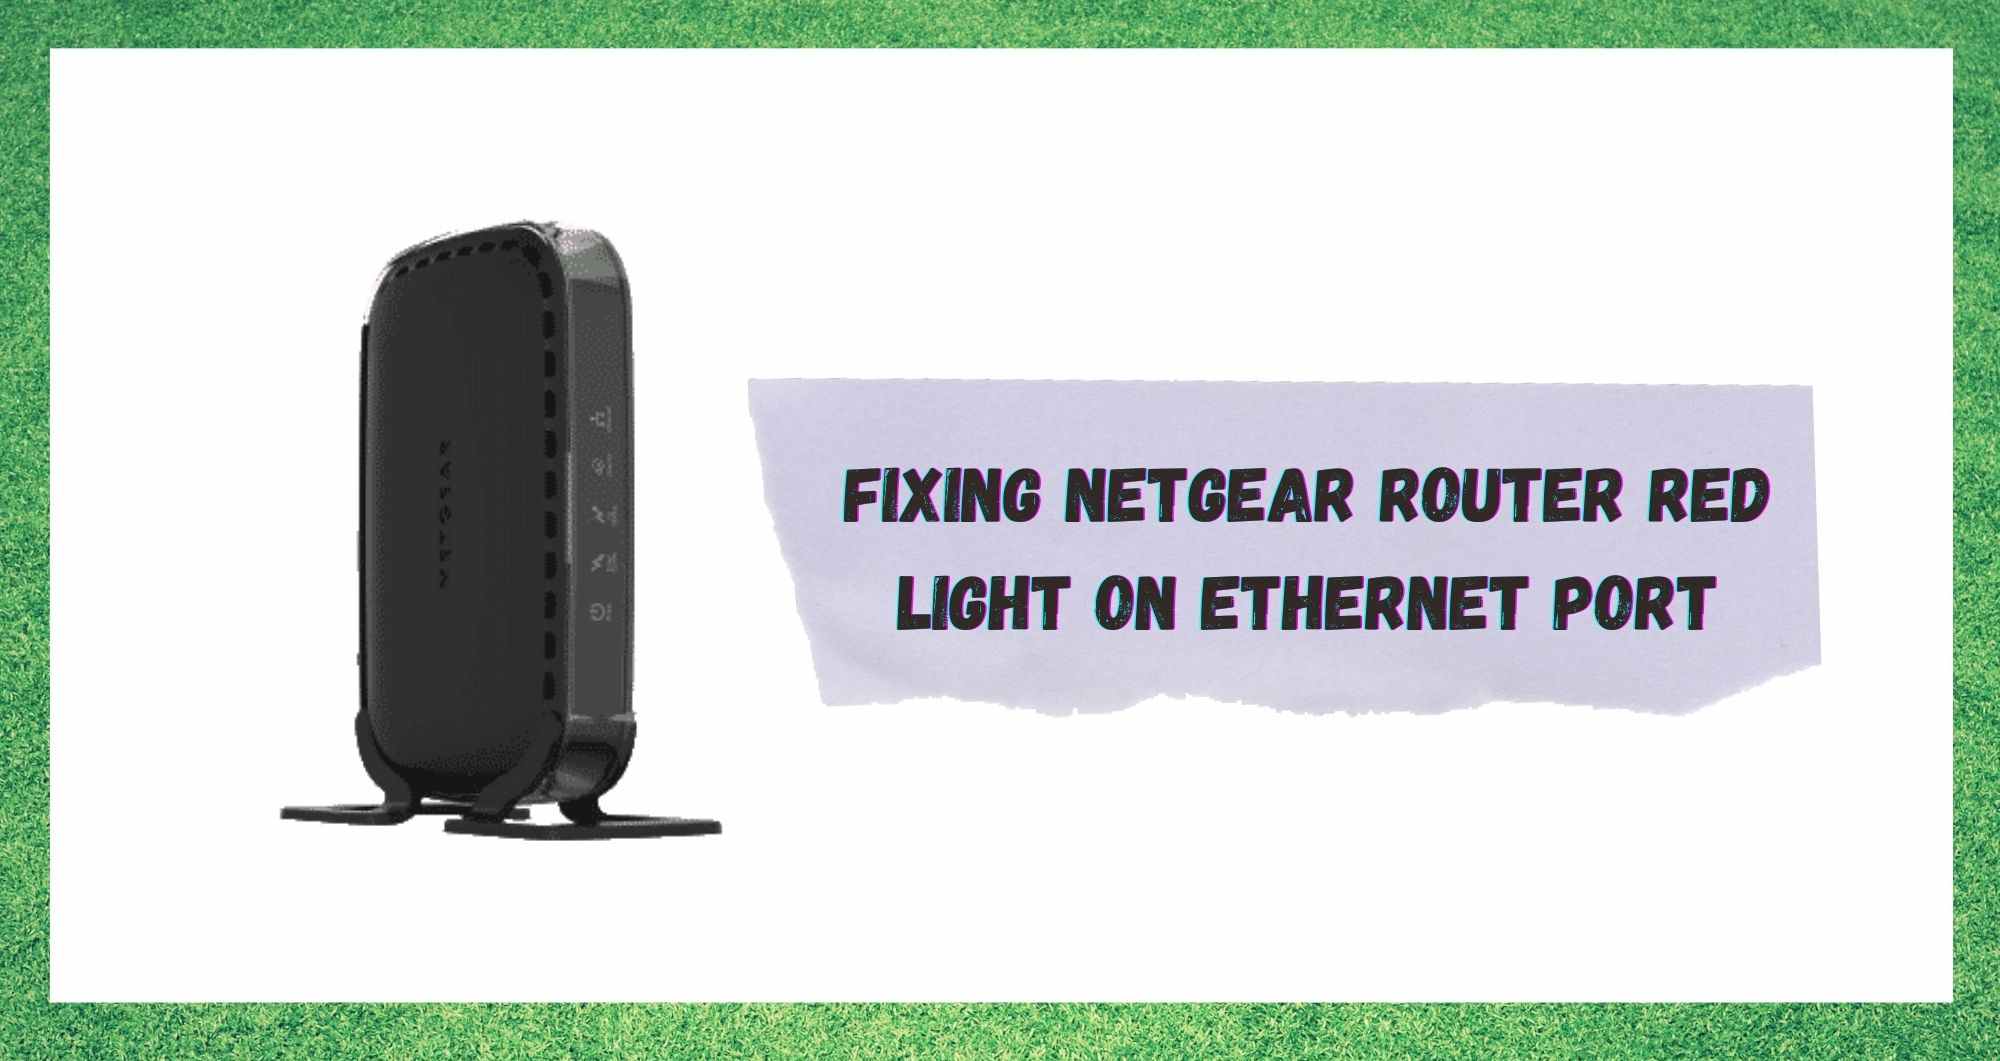 Netgear Router Rooi lig op Ethernet-poort: 4 maniere om reg te stel